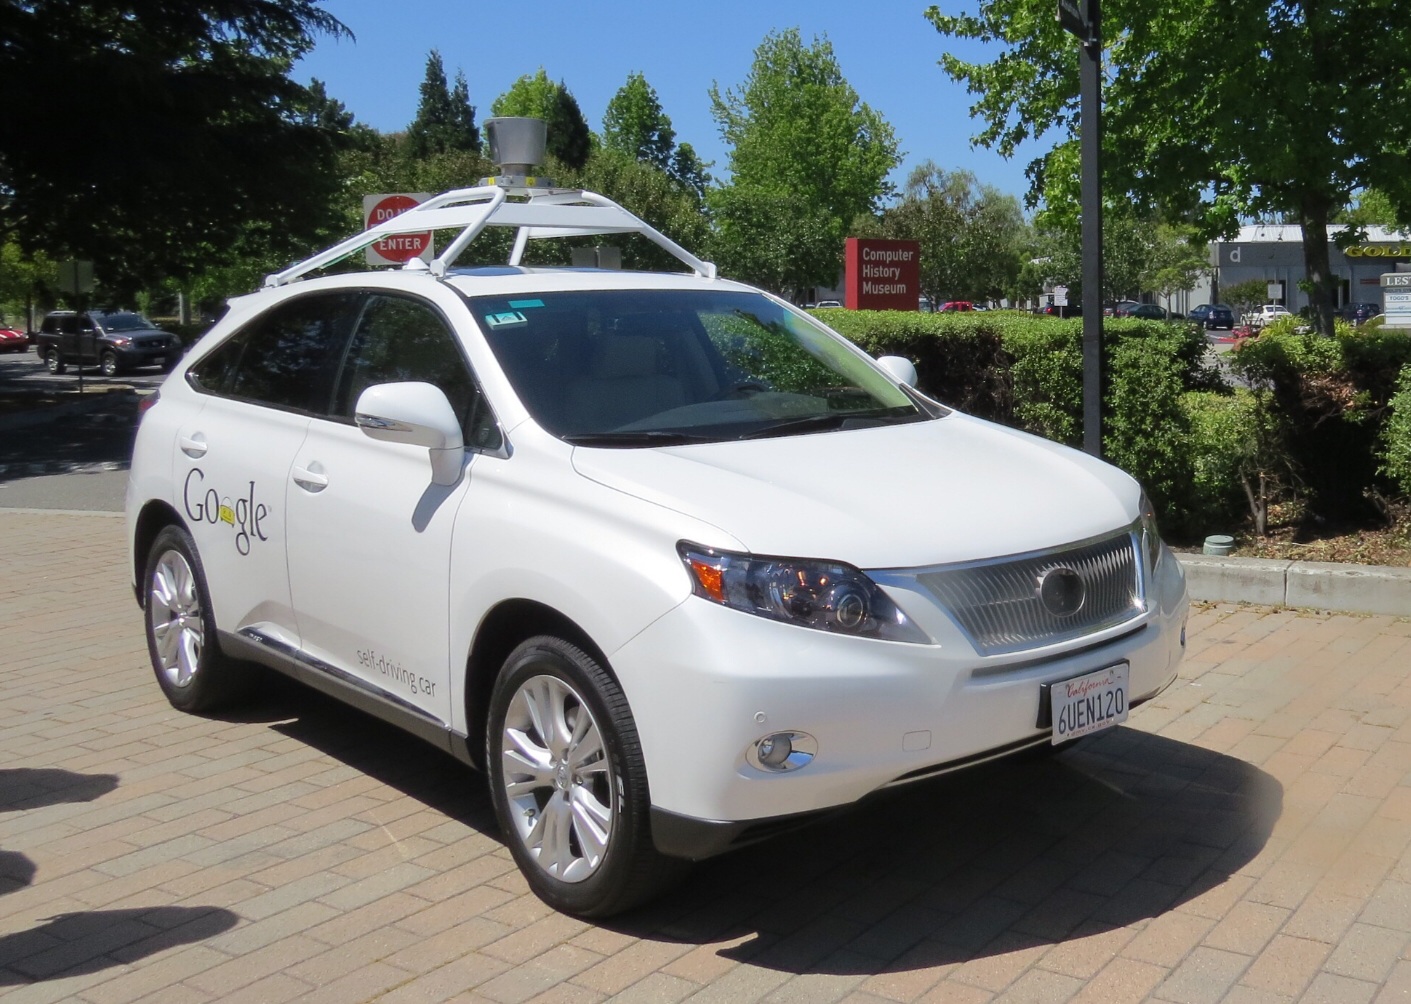 Google-self driving car